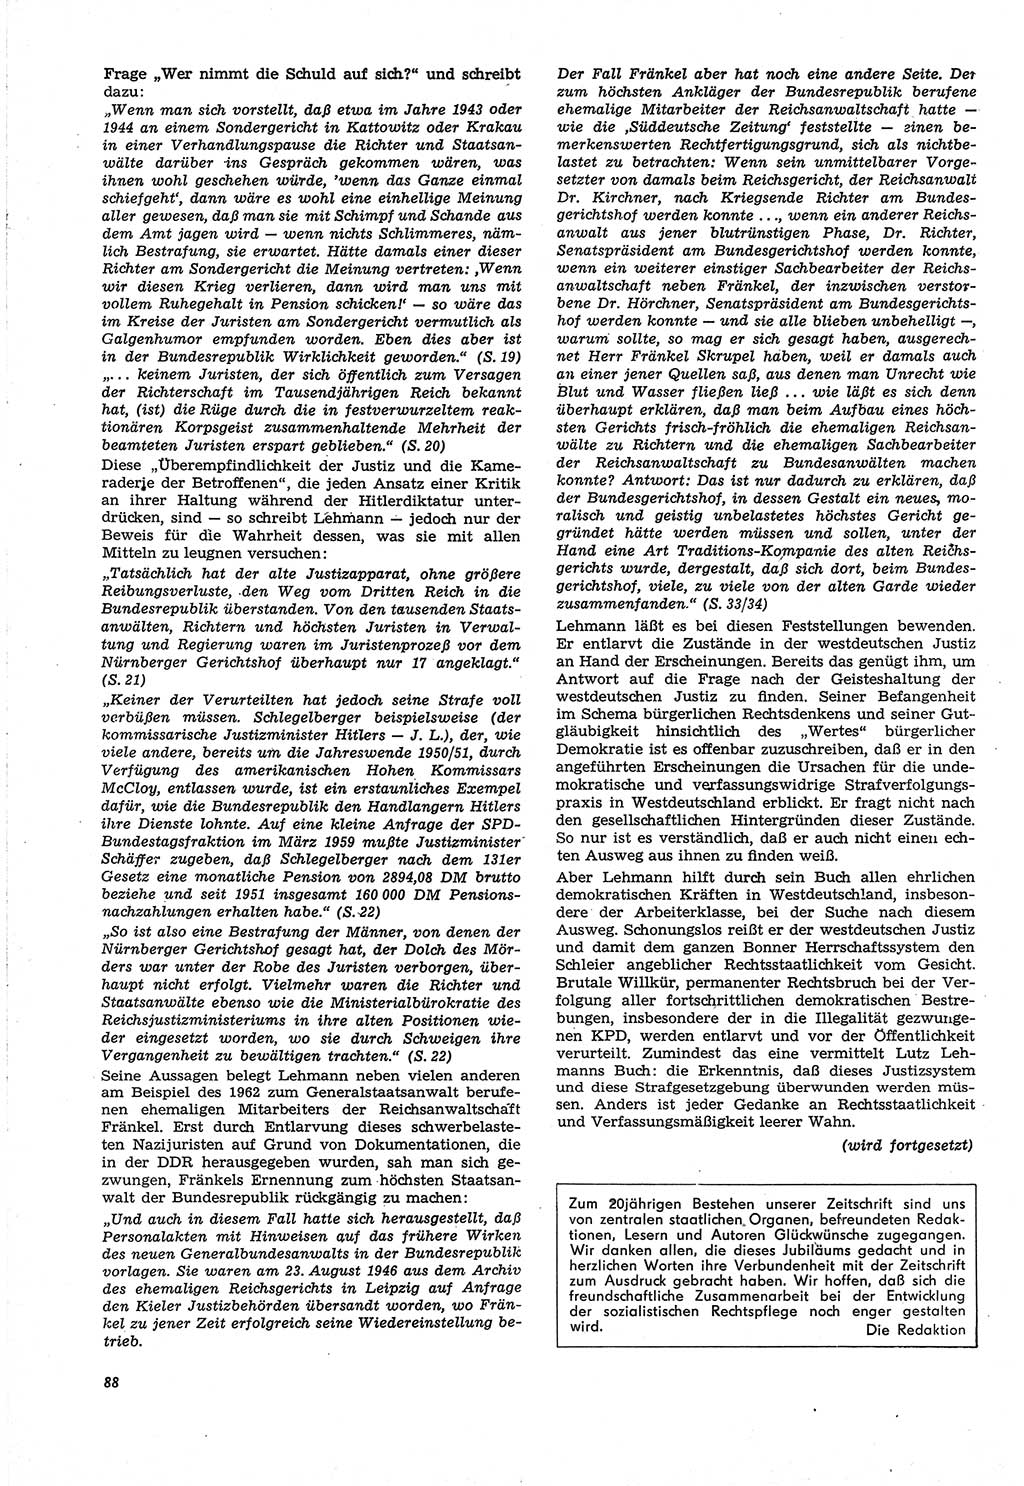 Neue Justiz (NJ), Zeitschrift für Recht und Rechtswissenschaft [Deutsche Demokratische Republik (DDR)], 21. Jahrgang 1967, Seite 88 (NJ DDR 1967, S. 88)